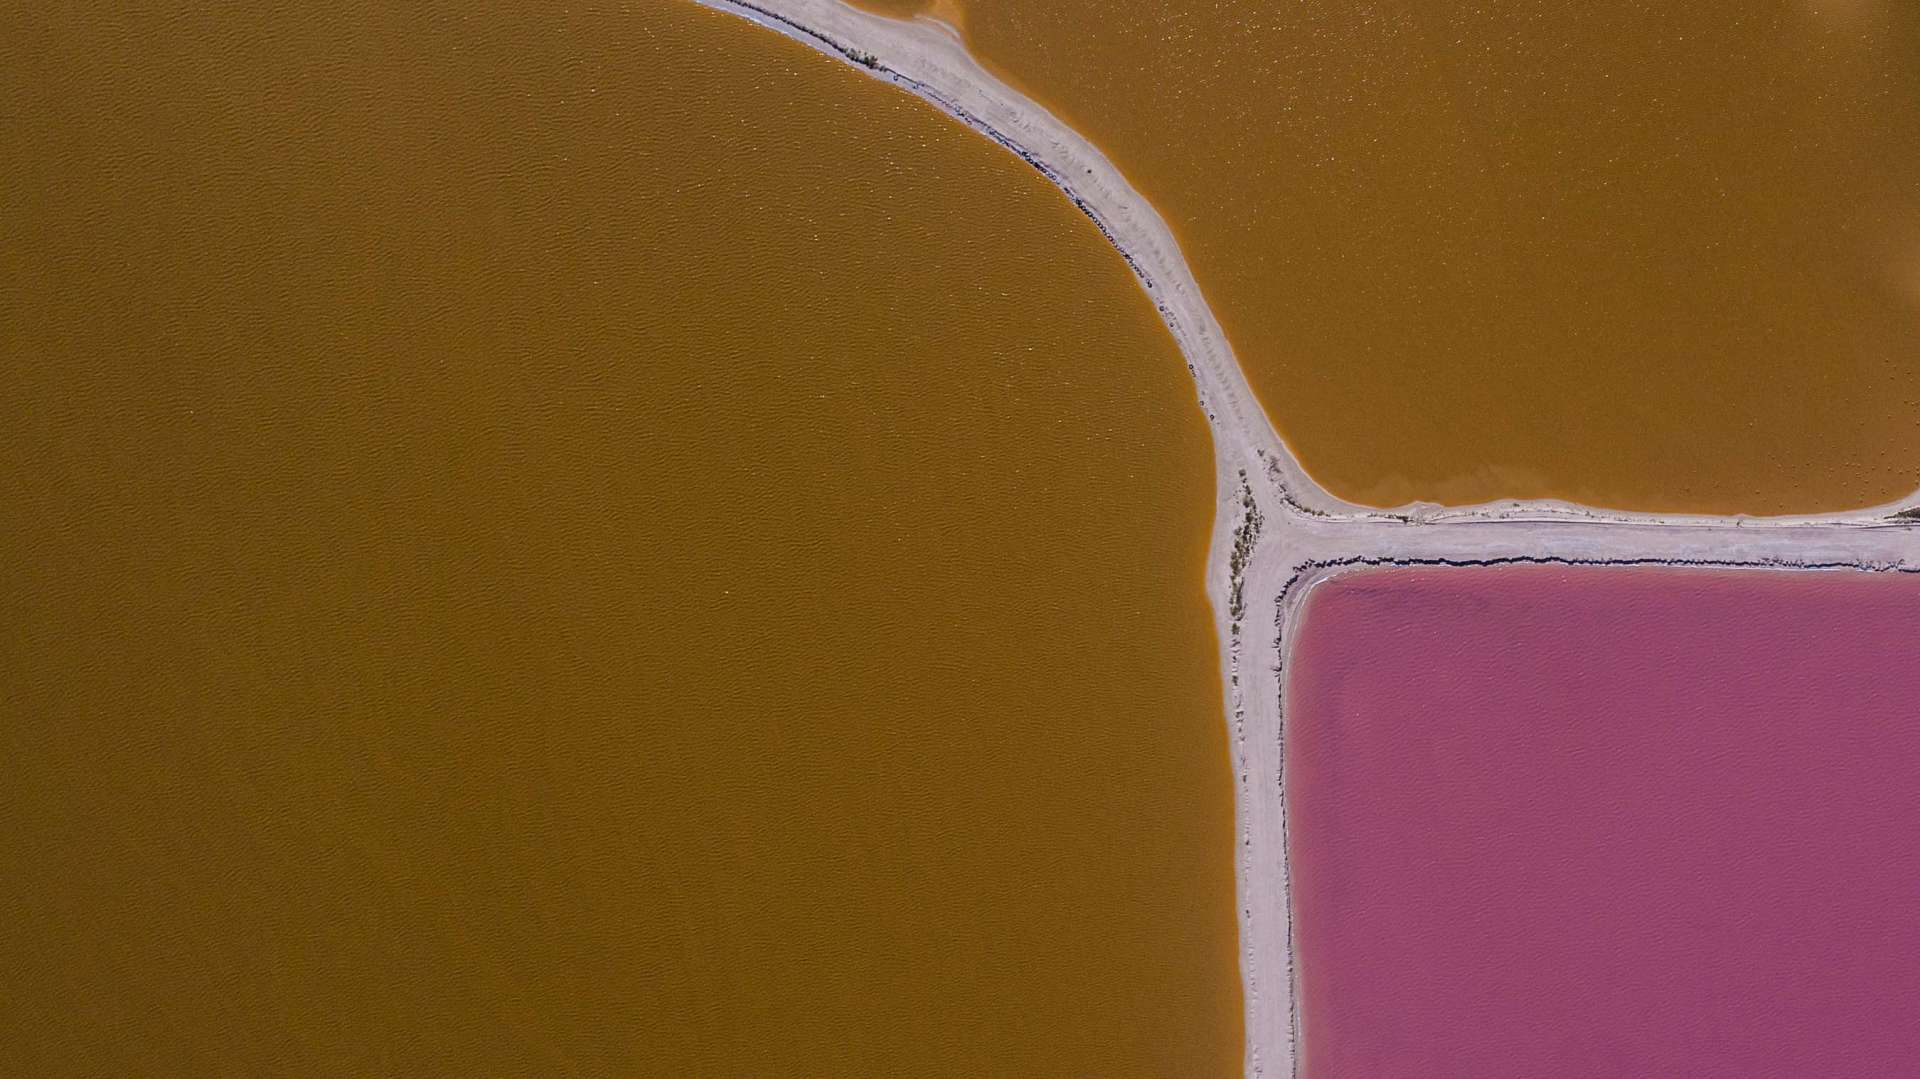 Pink lagoons Las Coloradas Yucatan Mexico Aerial View by drone Enrico Pescantini 2